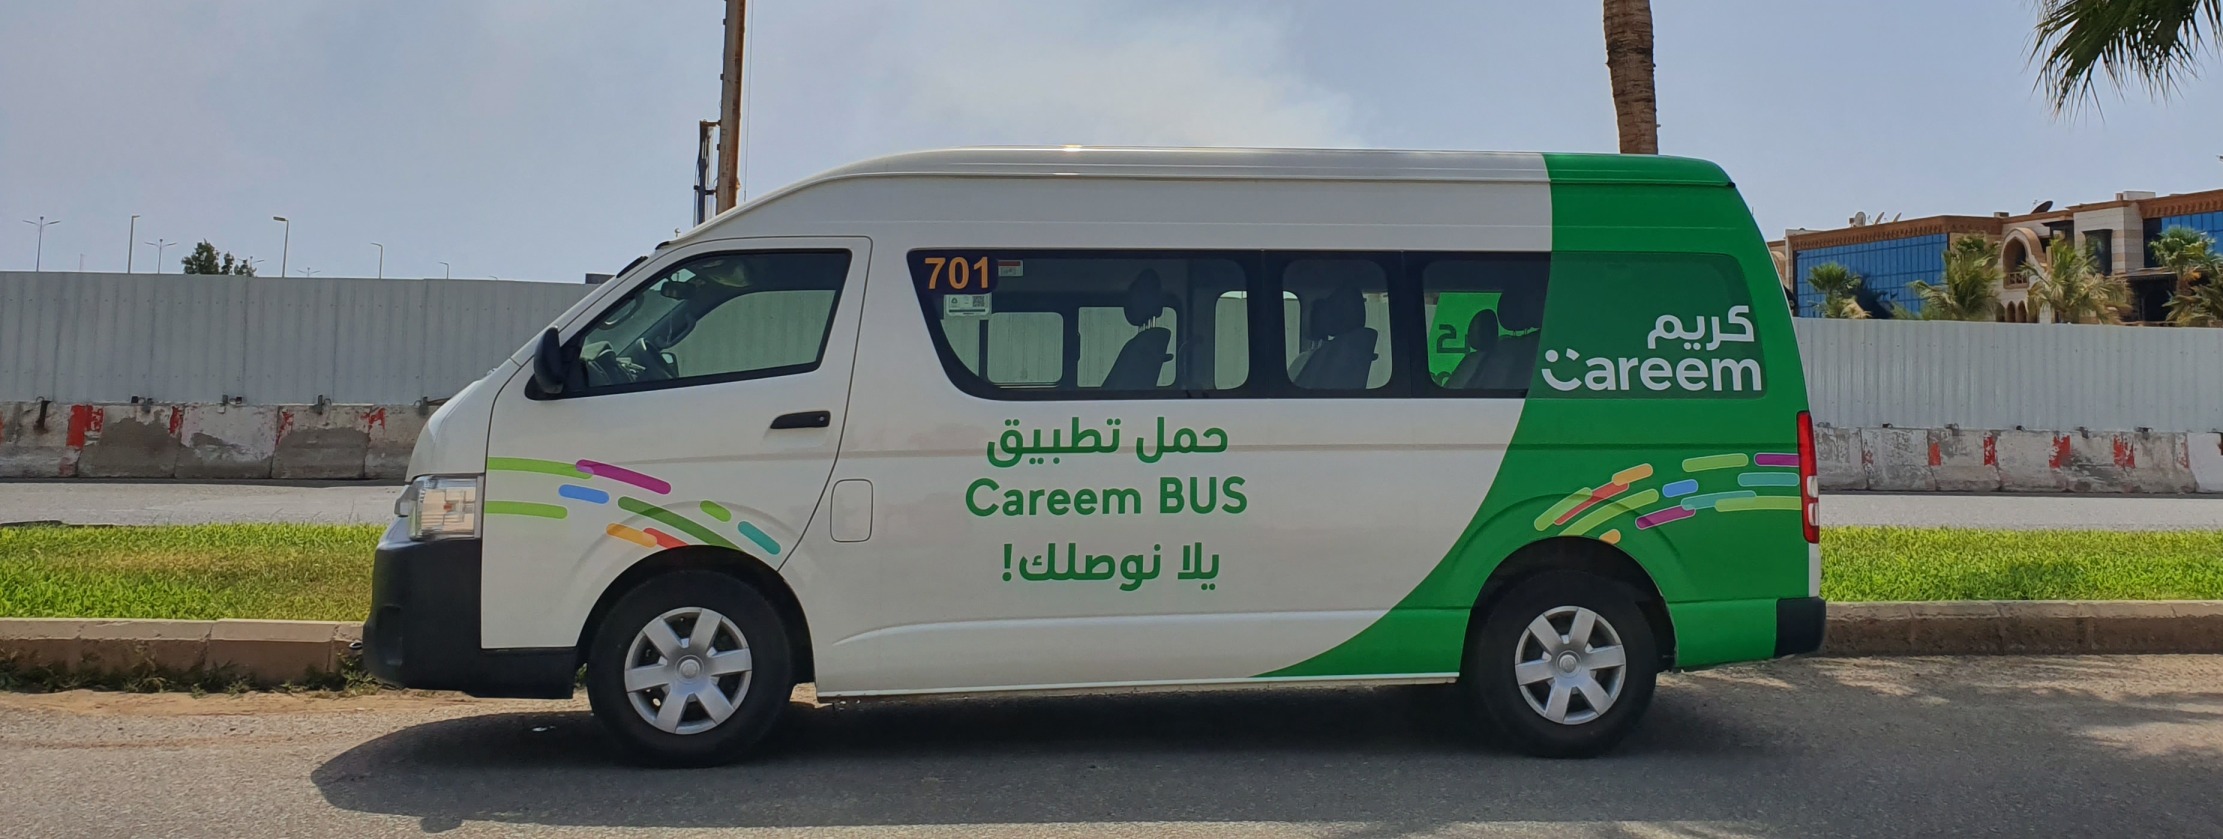 كريم تطلق خدمة النقل بالحافلات الصغيرة في جدة بتسعيرة تتراوح من 3 إلى 5 ريال